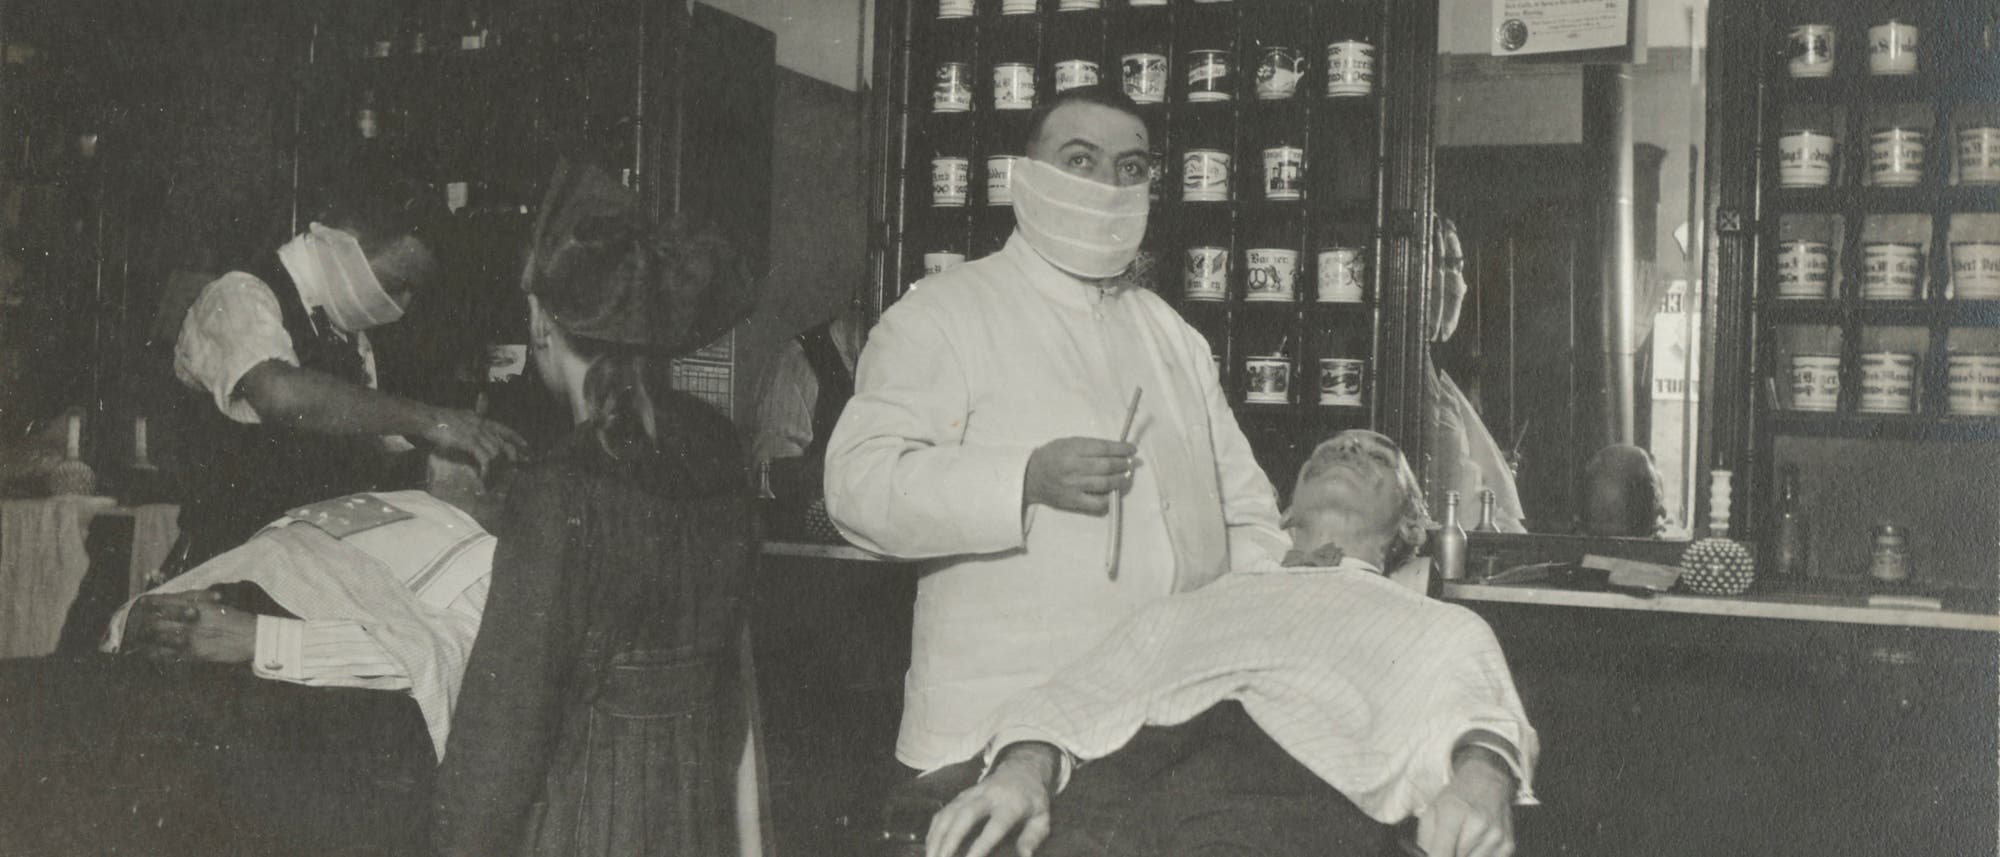 Barbiere und Frisöre mit Mund-Nase-Bedeckung während der Spanischen Grippe 1918